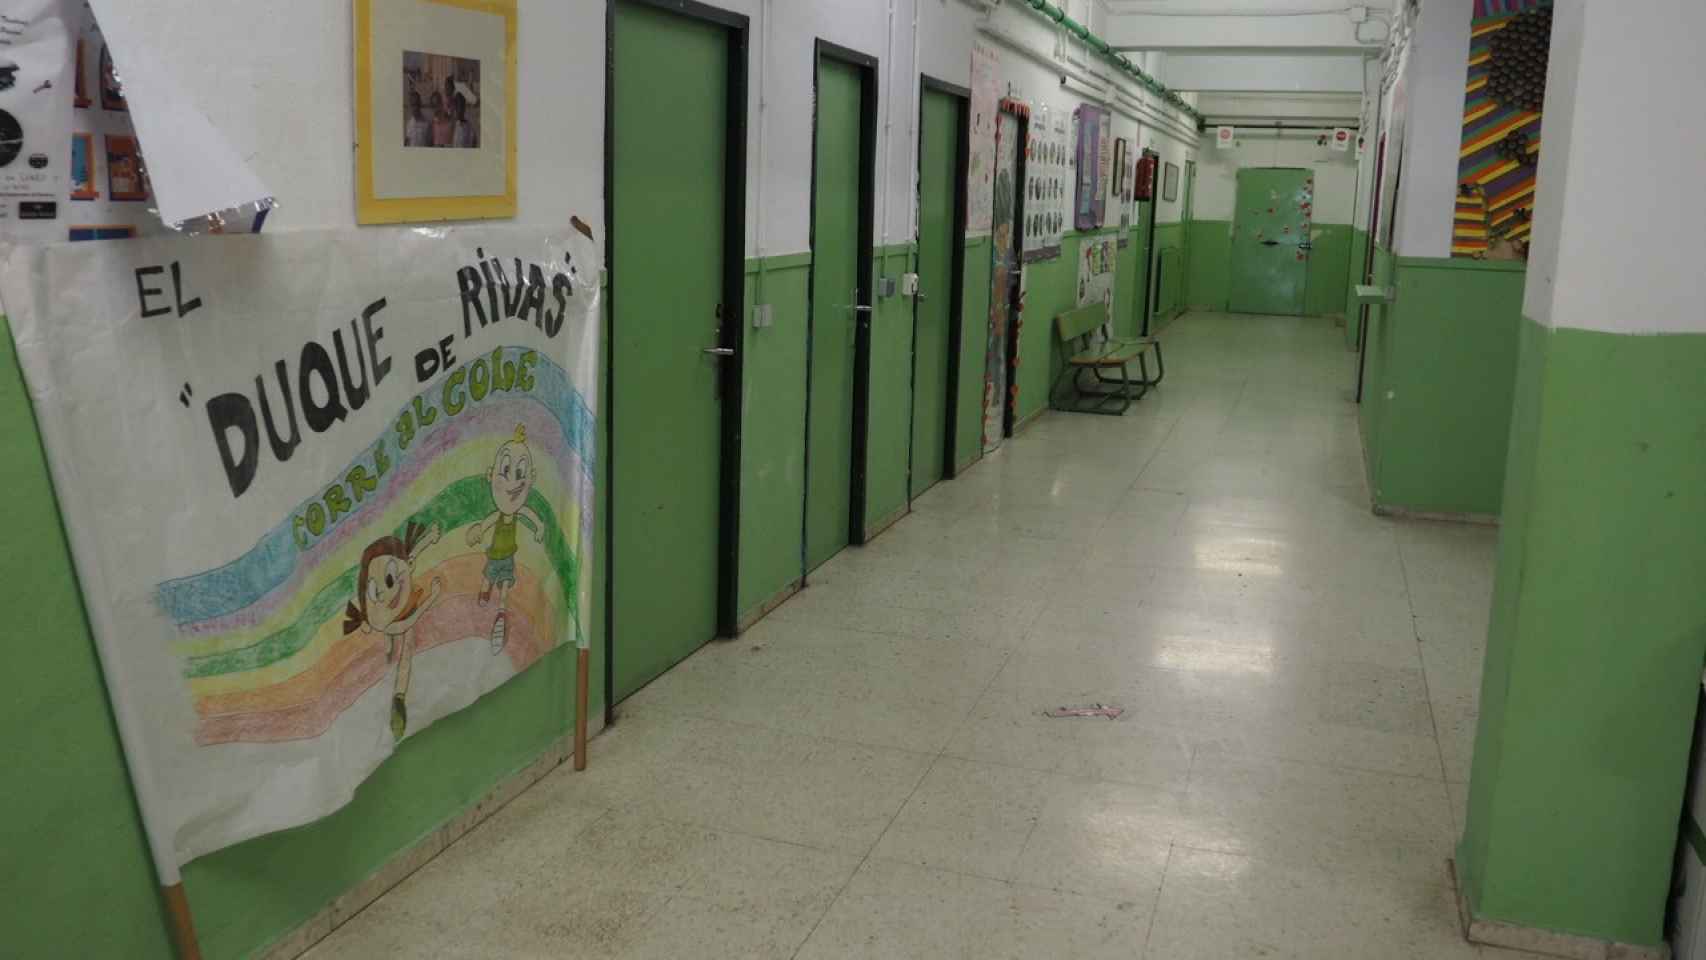 Los pasillos del colegio estaban vacíos porque los alumnos del centro se encontraban de excursión.